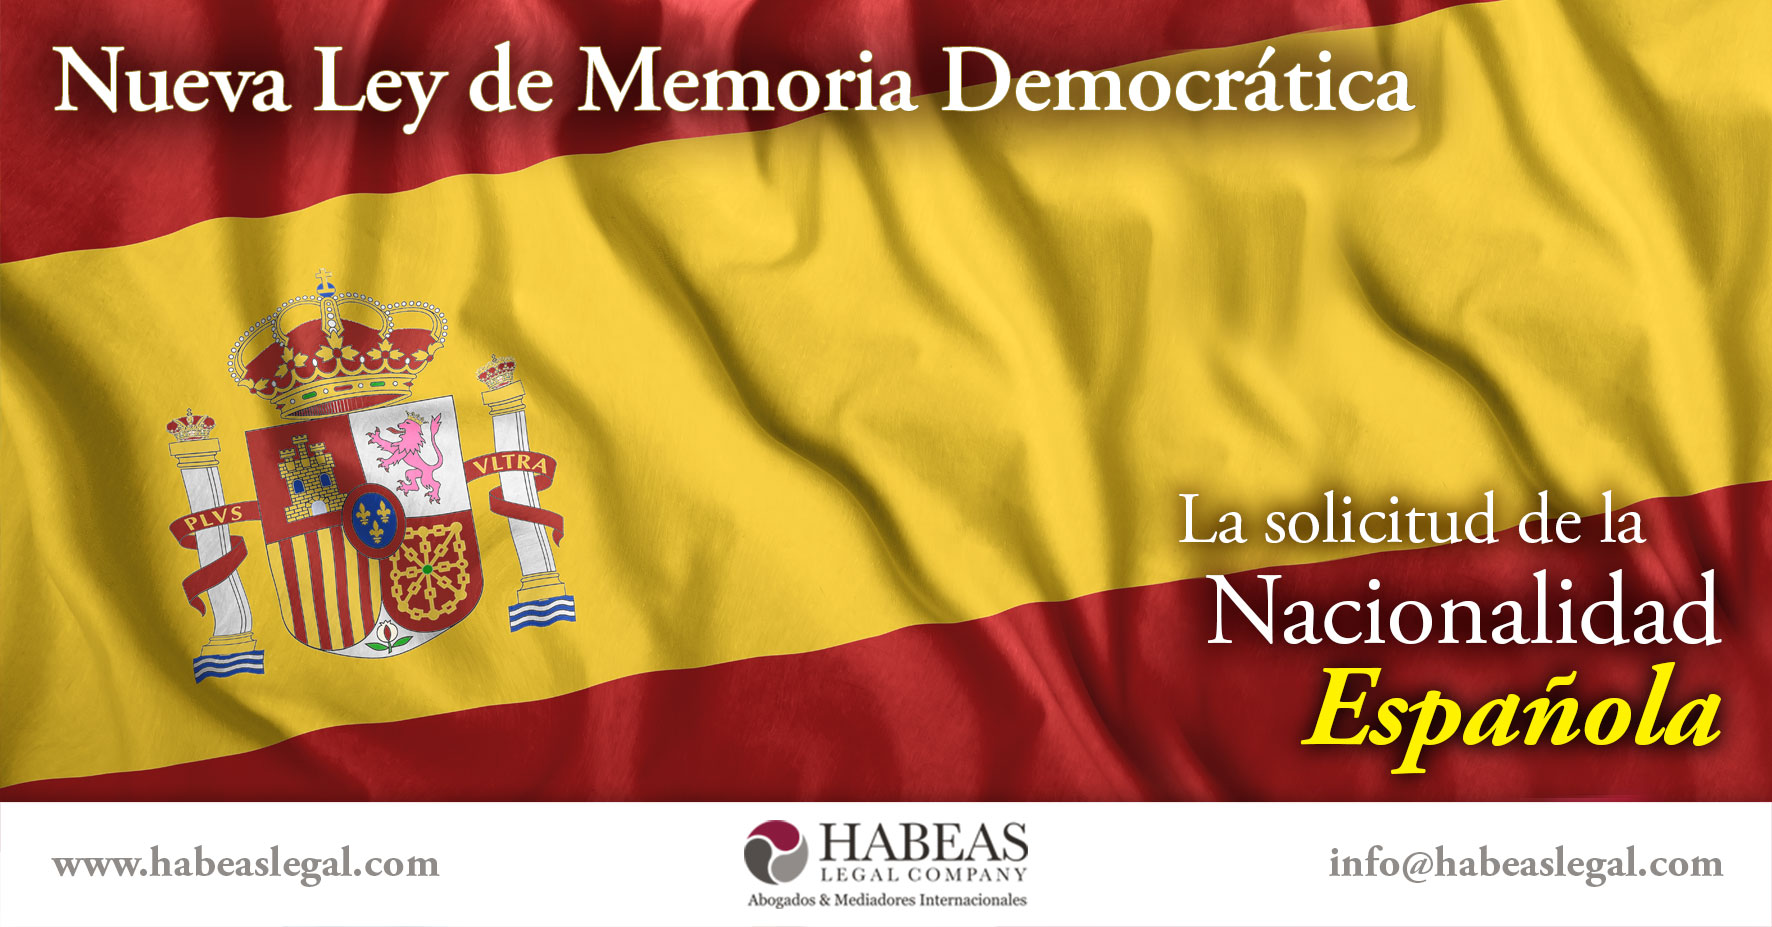 Nueva Ley Memoria Democratica Nacionalidad Espanola Habeas Legal - Abogados Internacionales especializados en Extranjería, Inmigración y Laboral